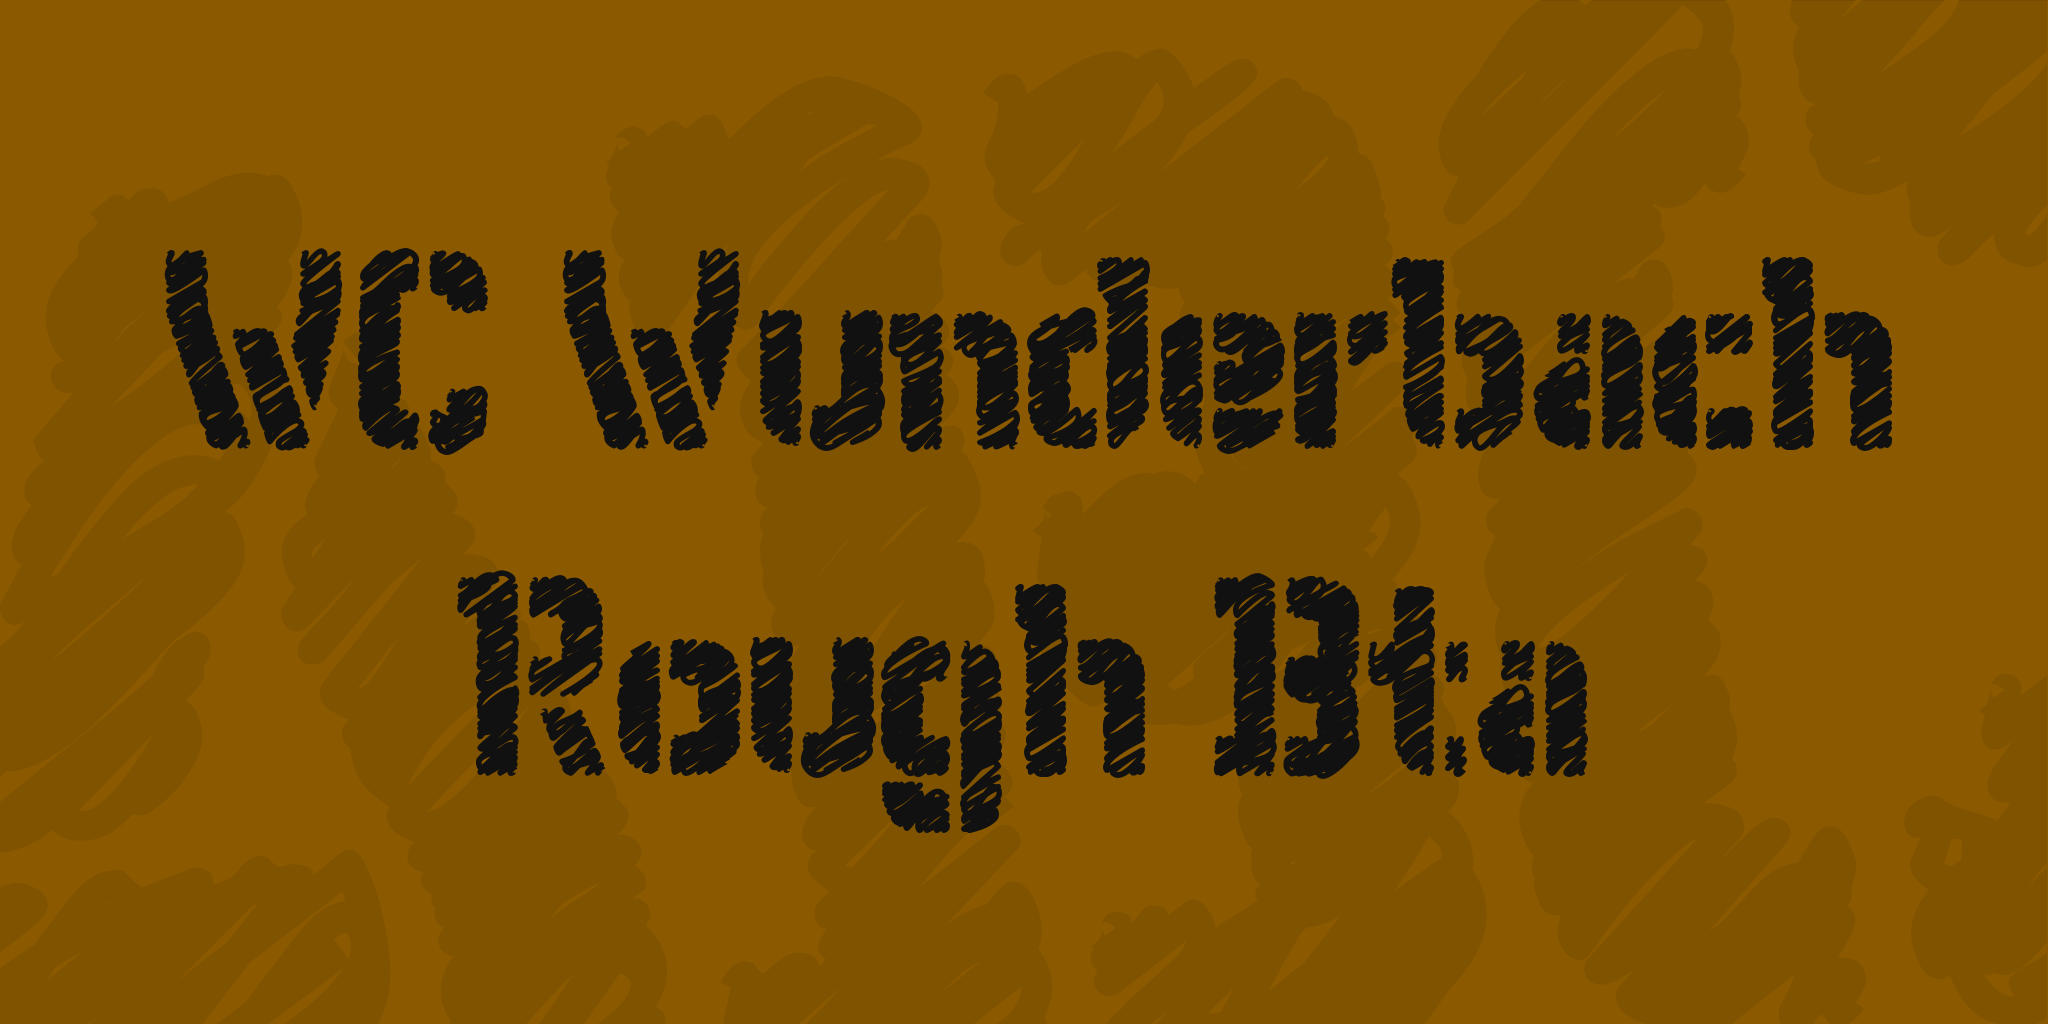 Wc Wunderbach Rough Bta